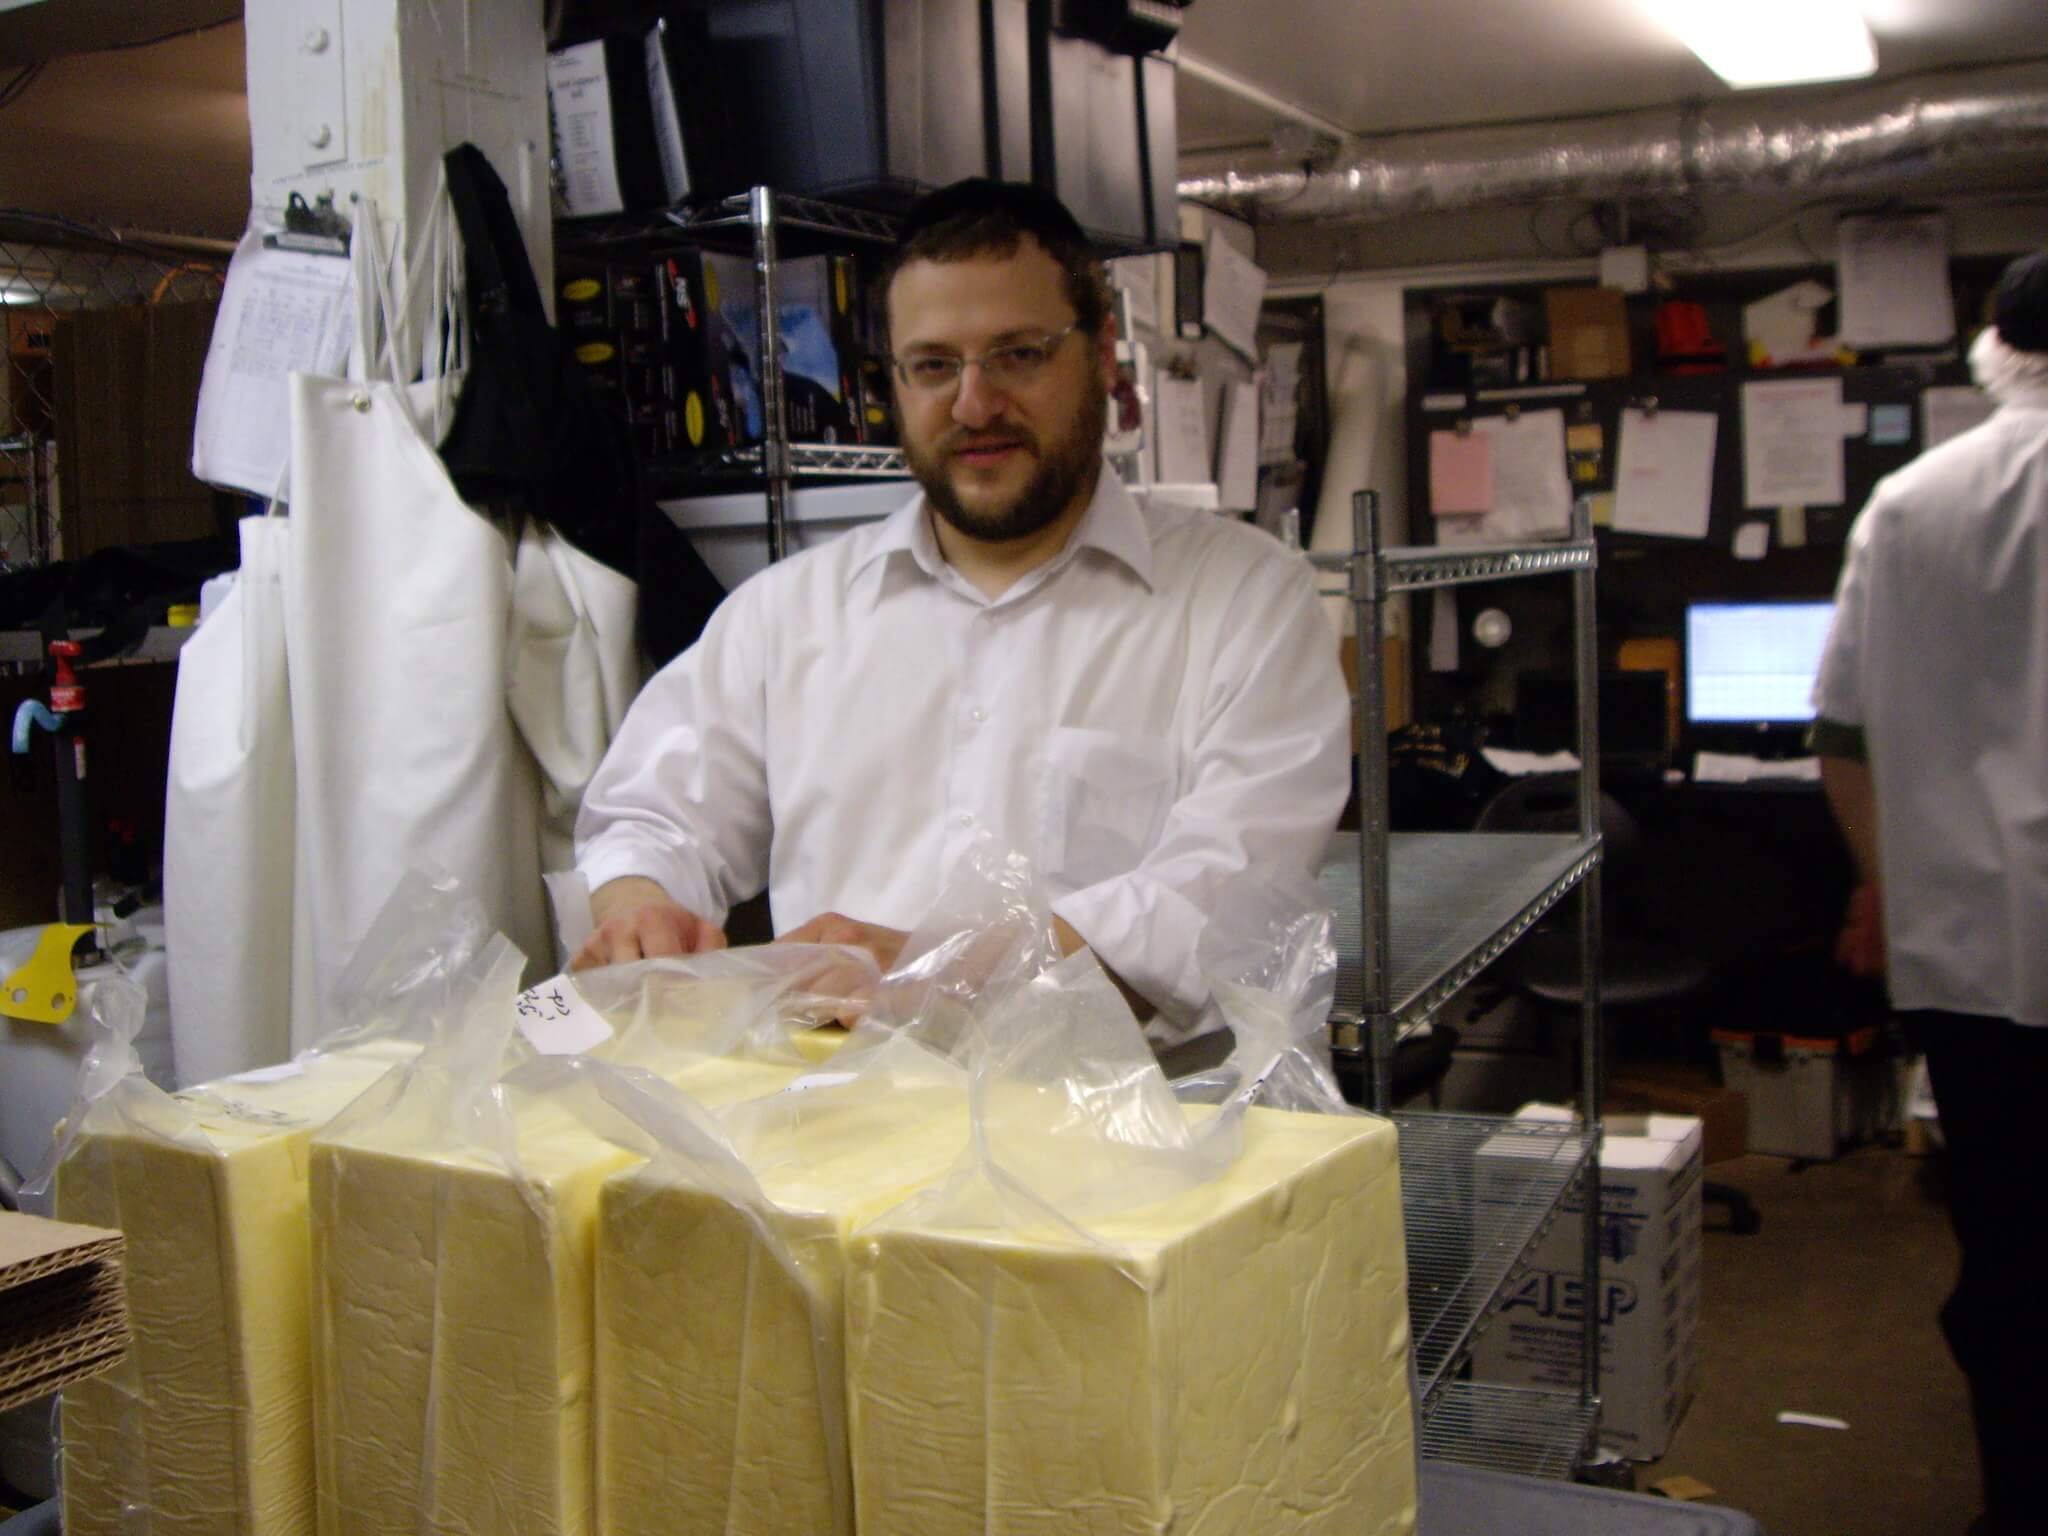 Rabino marca el queso como kosher